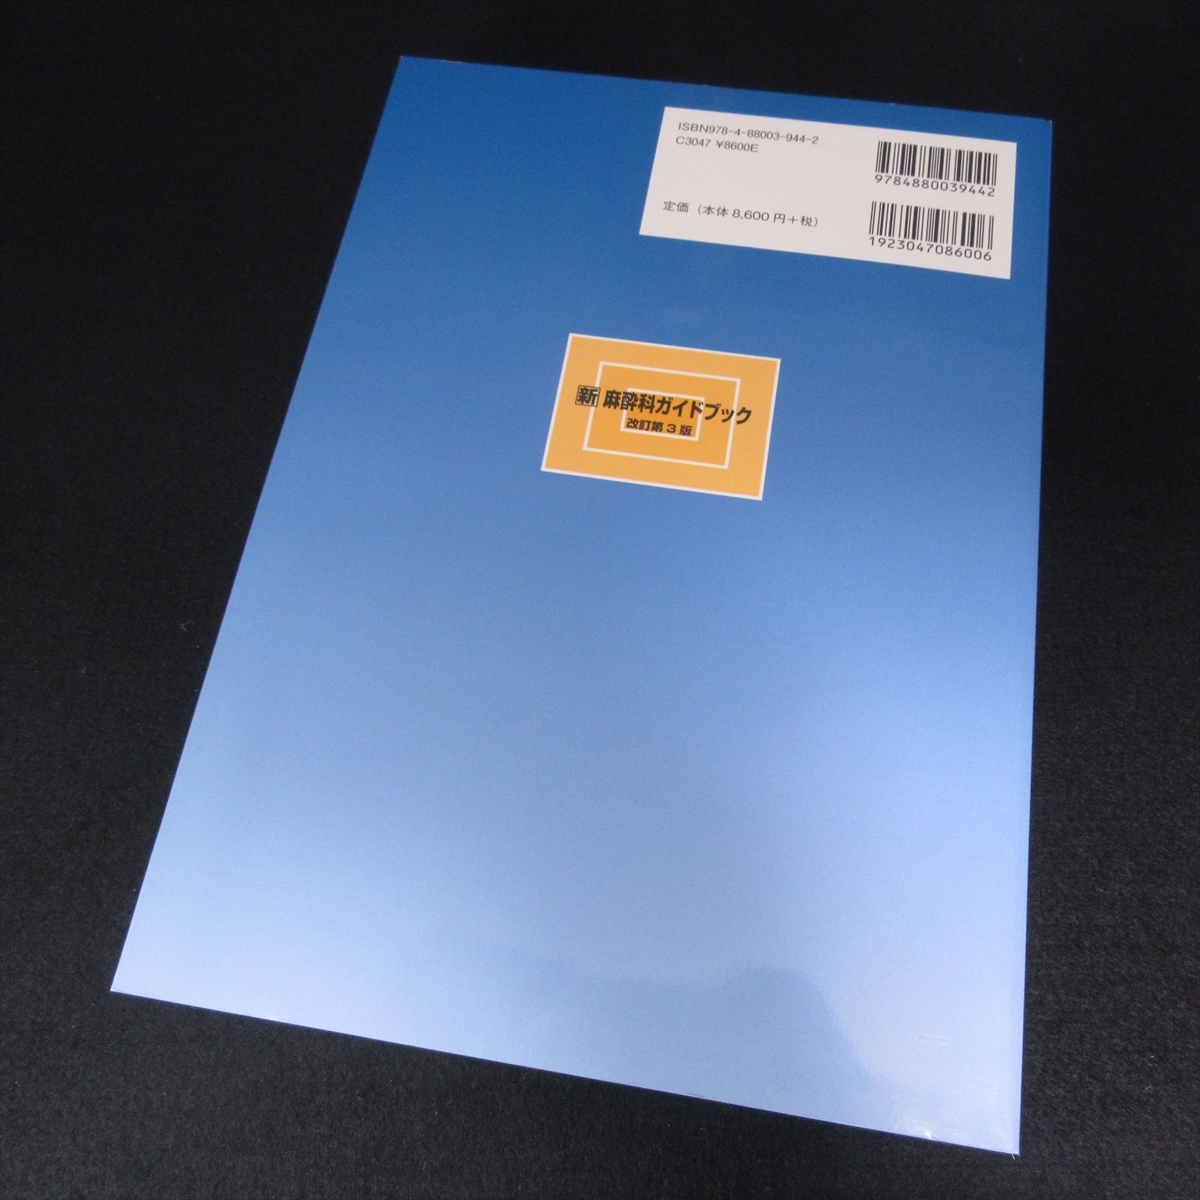 книга@[ новый анестезия . путеводитель модифицировано . no. 3 версия ] # отправка 185 иен . глициния . лен сырой ..2022.*